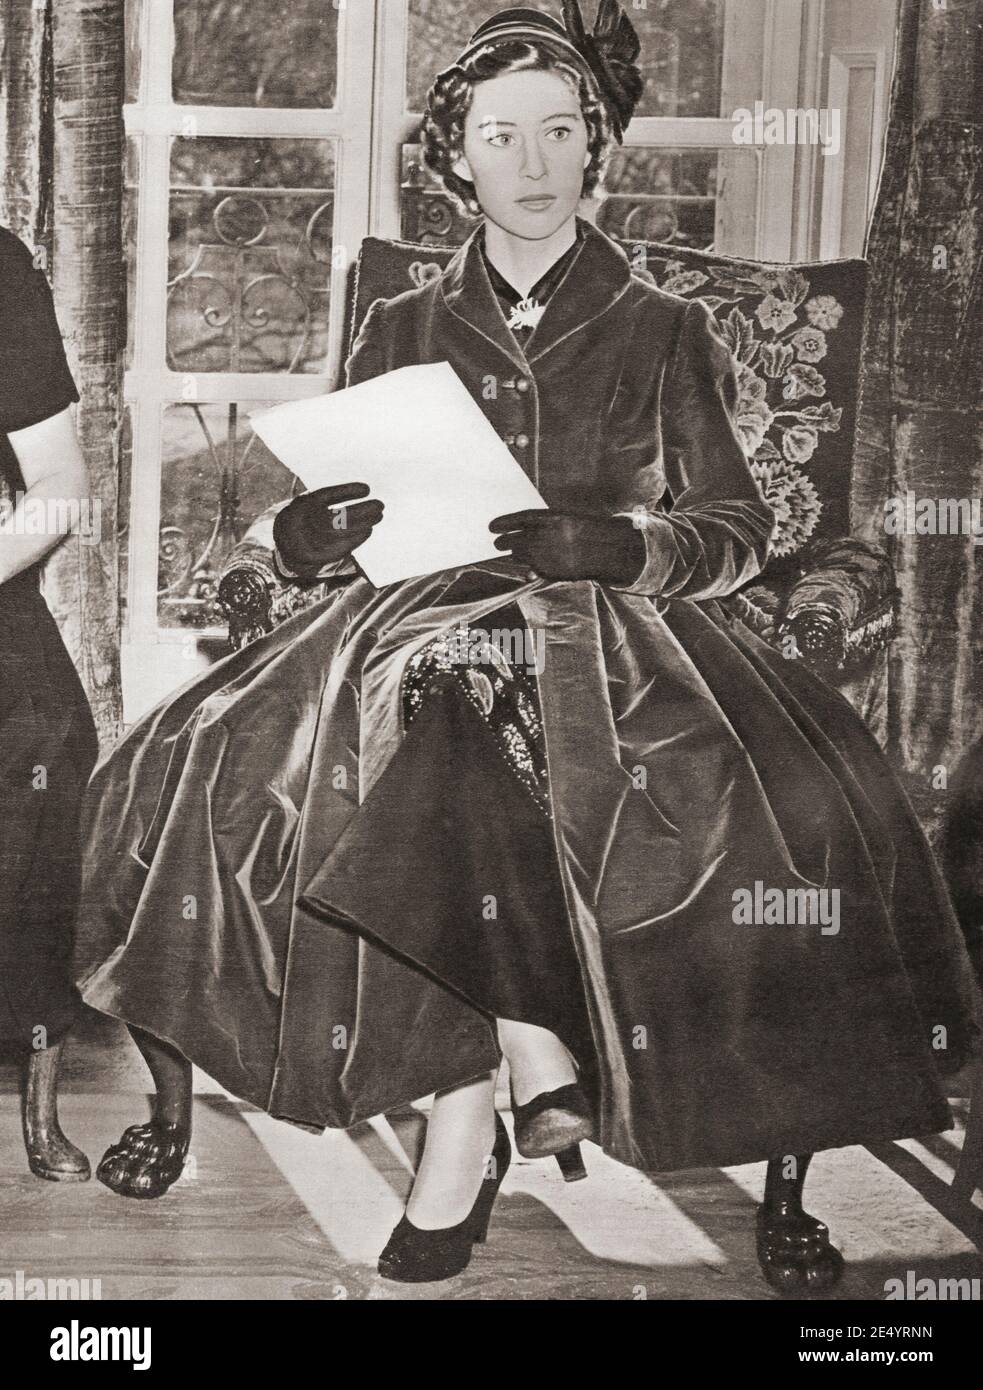 EDITORIAL NUR Prinzessin Margaret, gesehen hier in 1951. Prinzessin Margaret, 1930 – 2002, aka Prinzessin Margaret Rose. Zukünftige Gräfin von Snowden. Jüngere Tochter von König Georg VI. Und Königin Elisabeth. Aus dem Königin-Elisabeth-Krönungsbuch, veröffentlicht 1953. Stockfoto